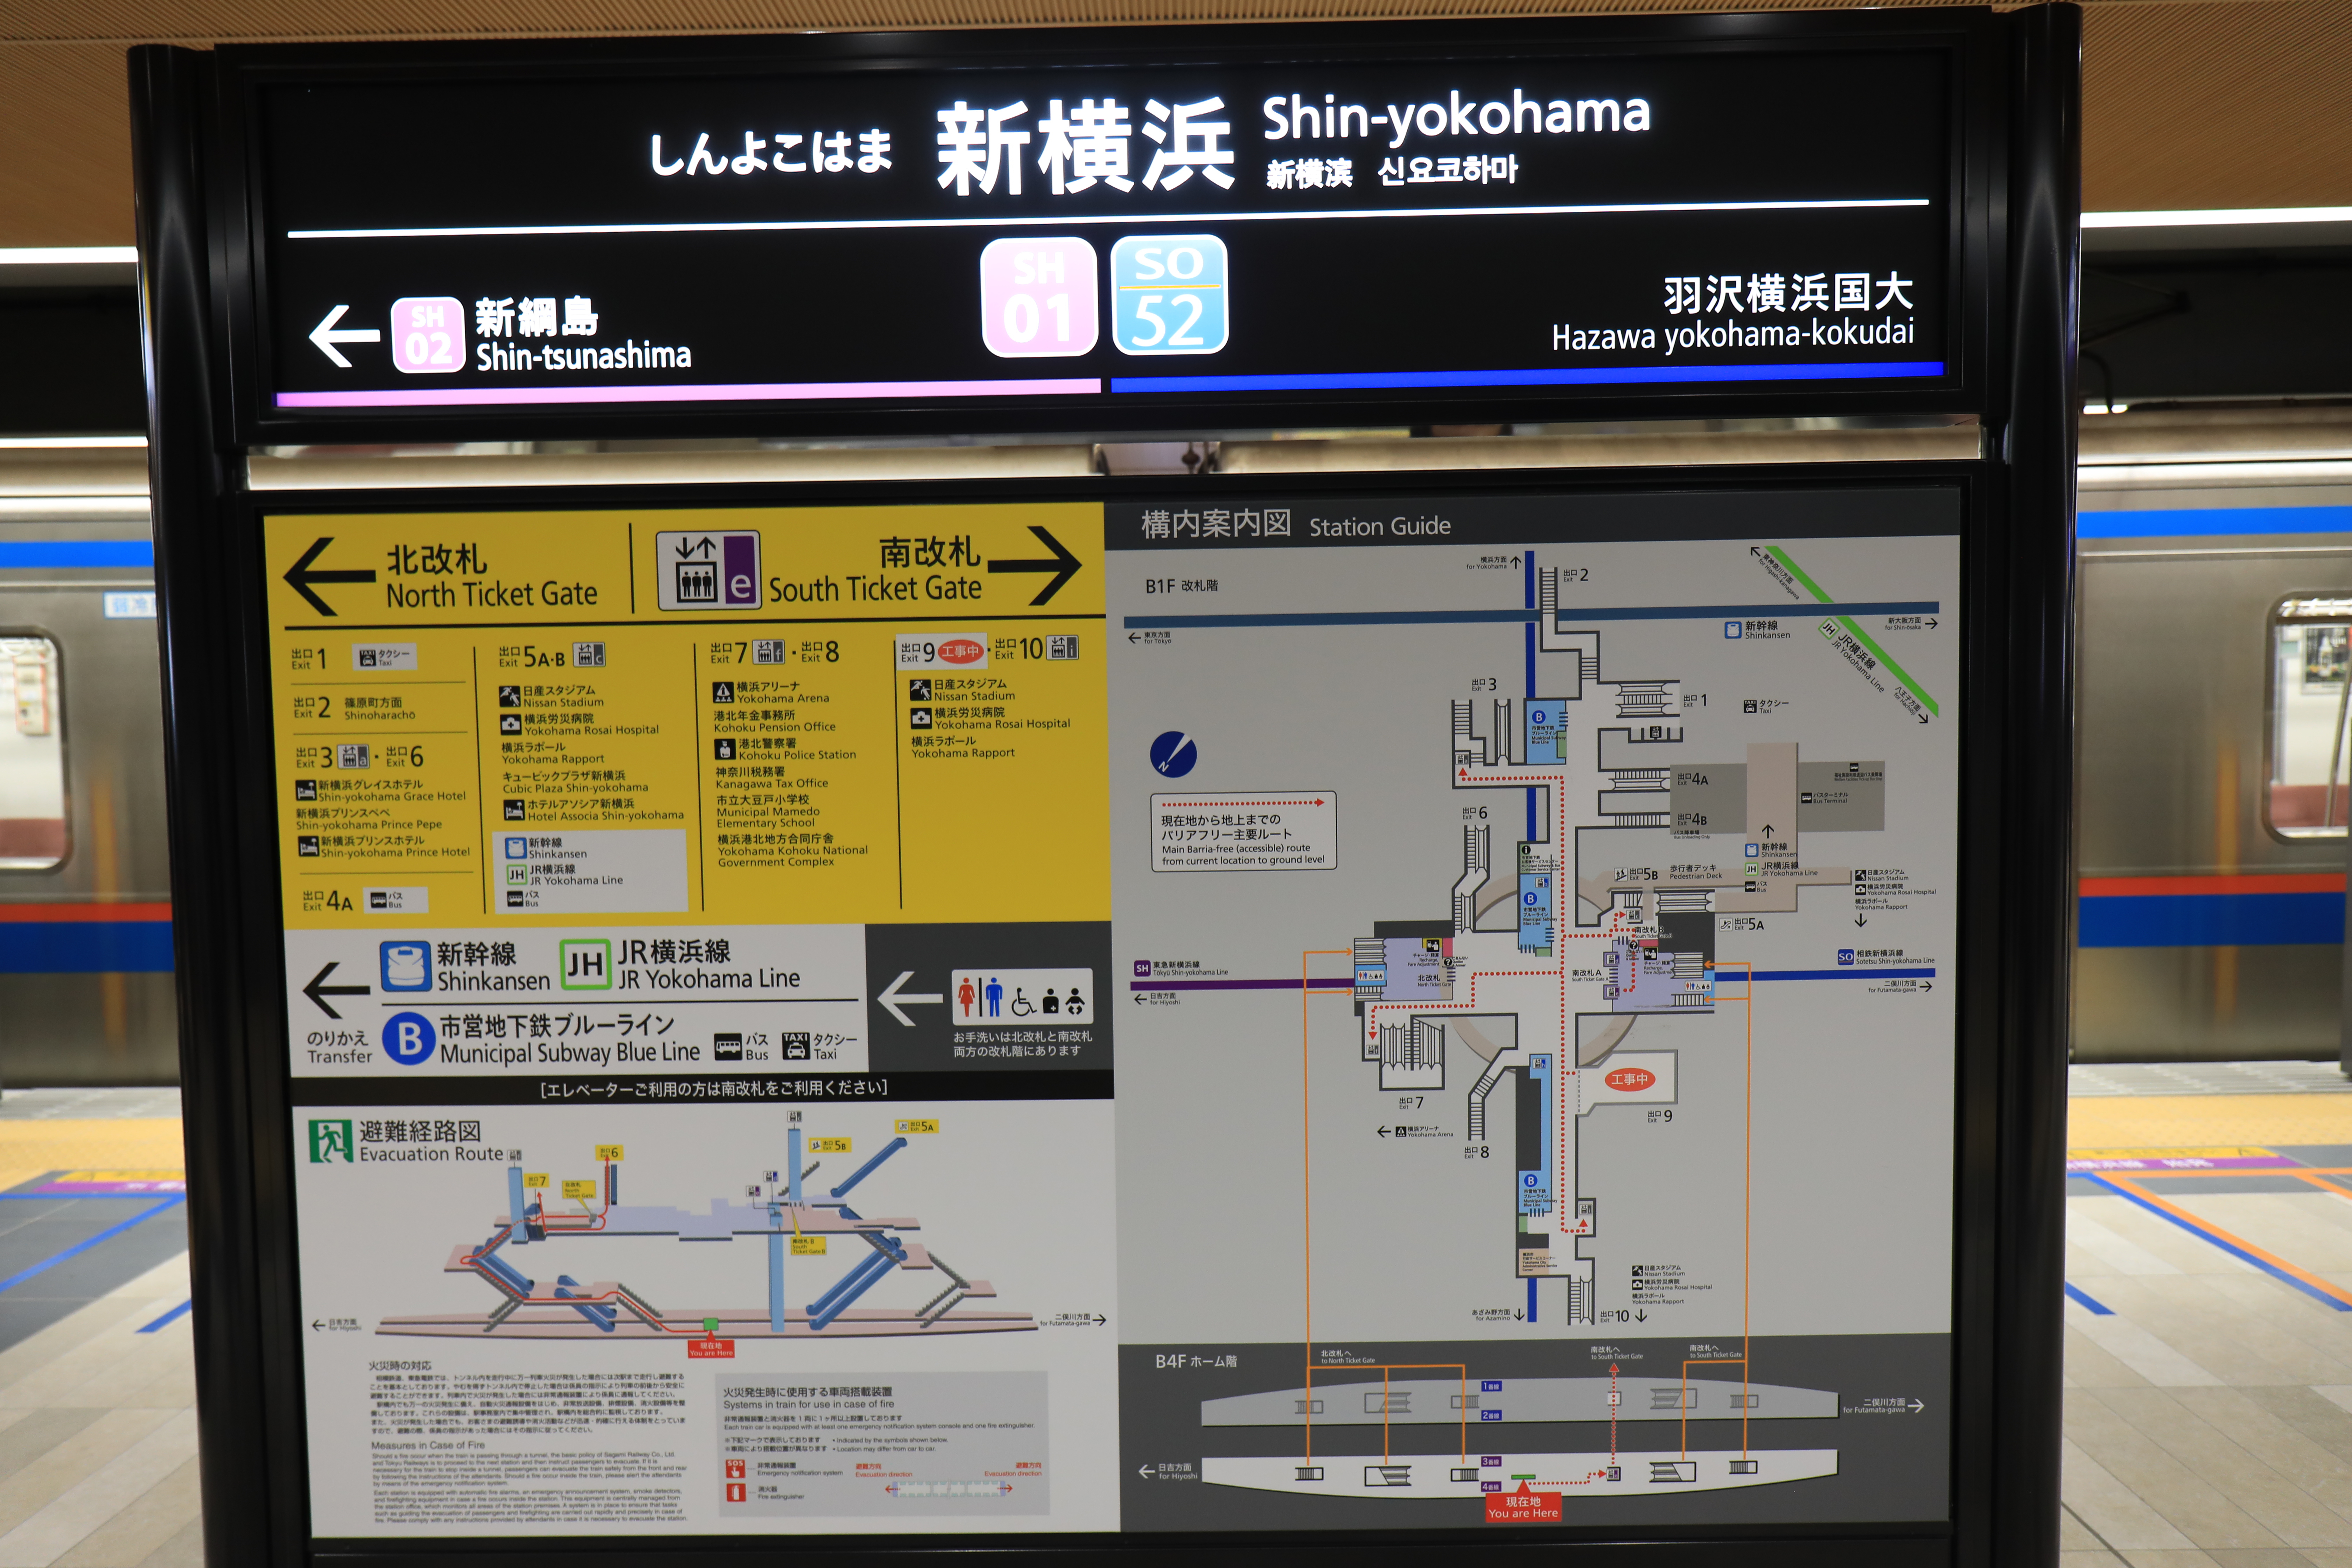 乗り場の新横浜駅の駅標と案内図